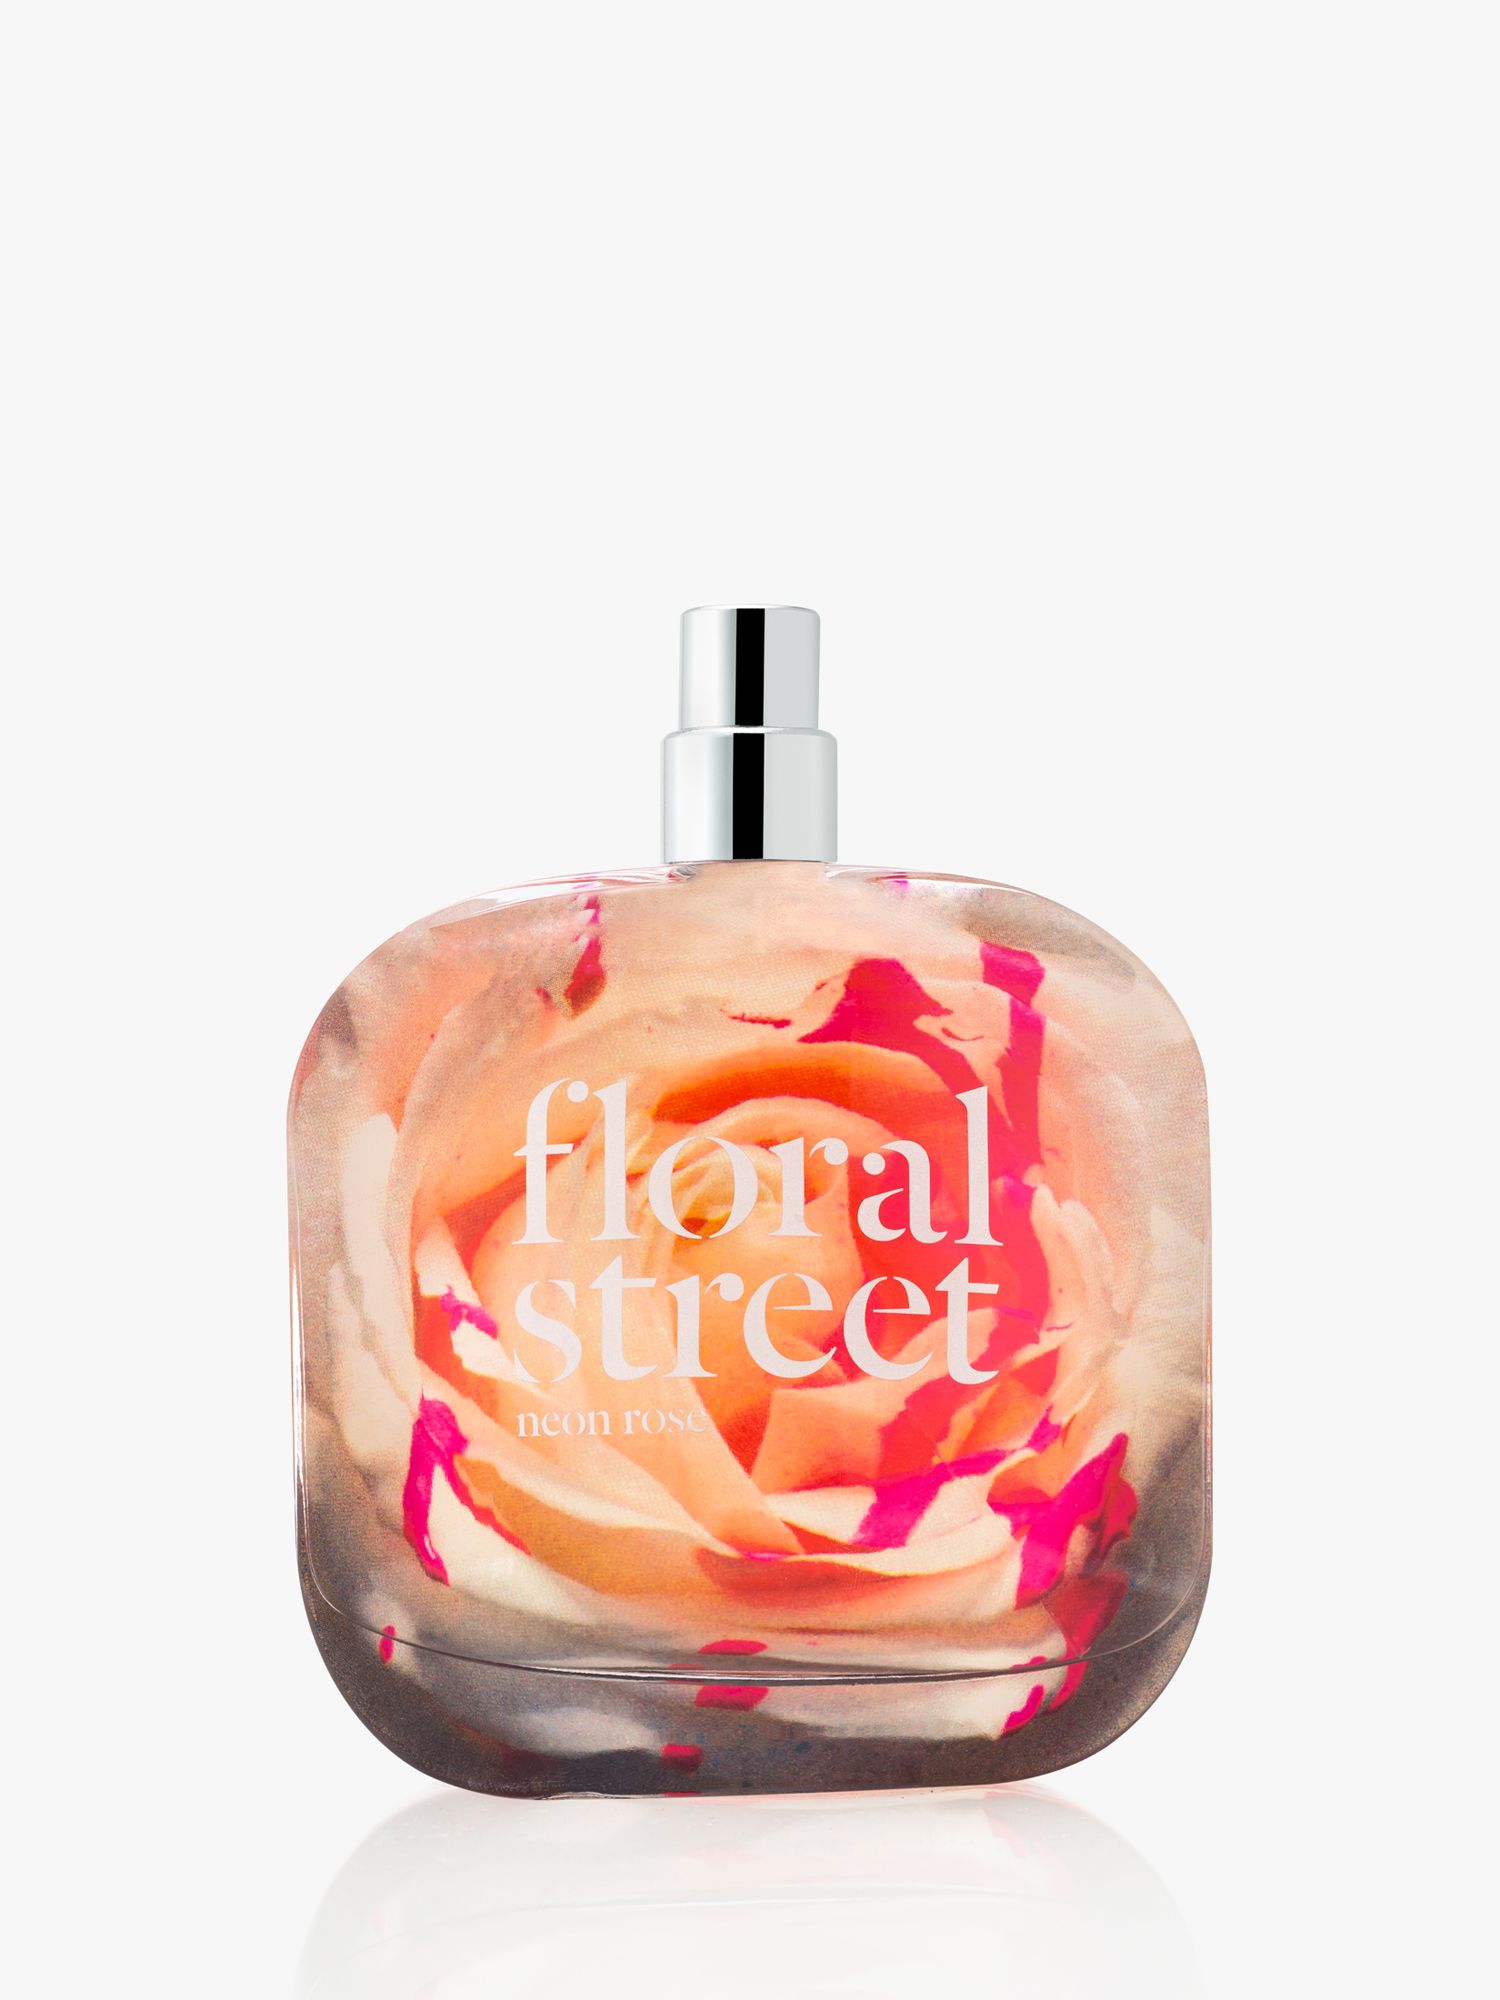 Floral Street Neon Rose Eau de Parfum, 100ml 1